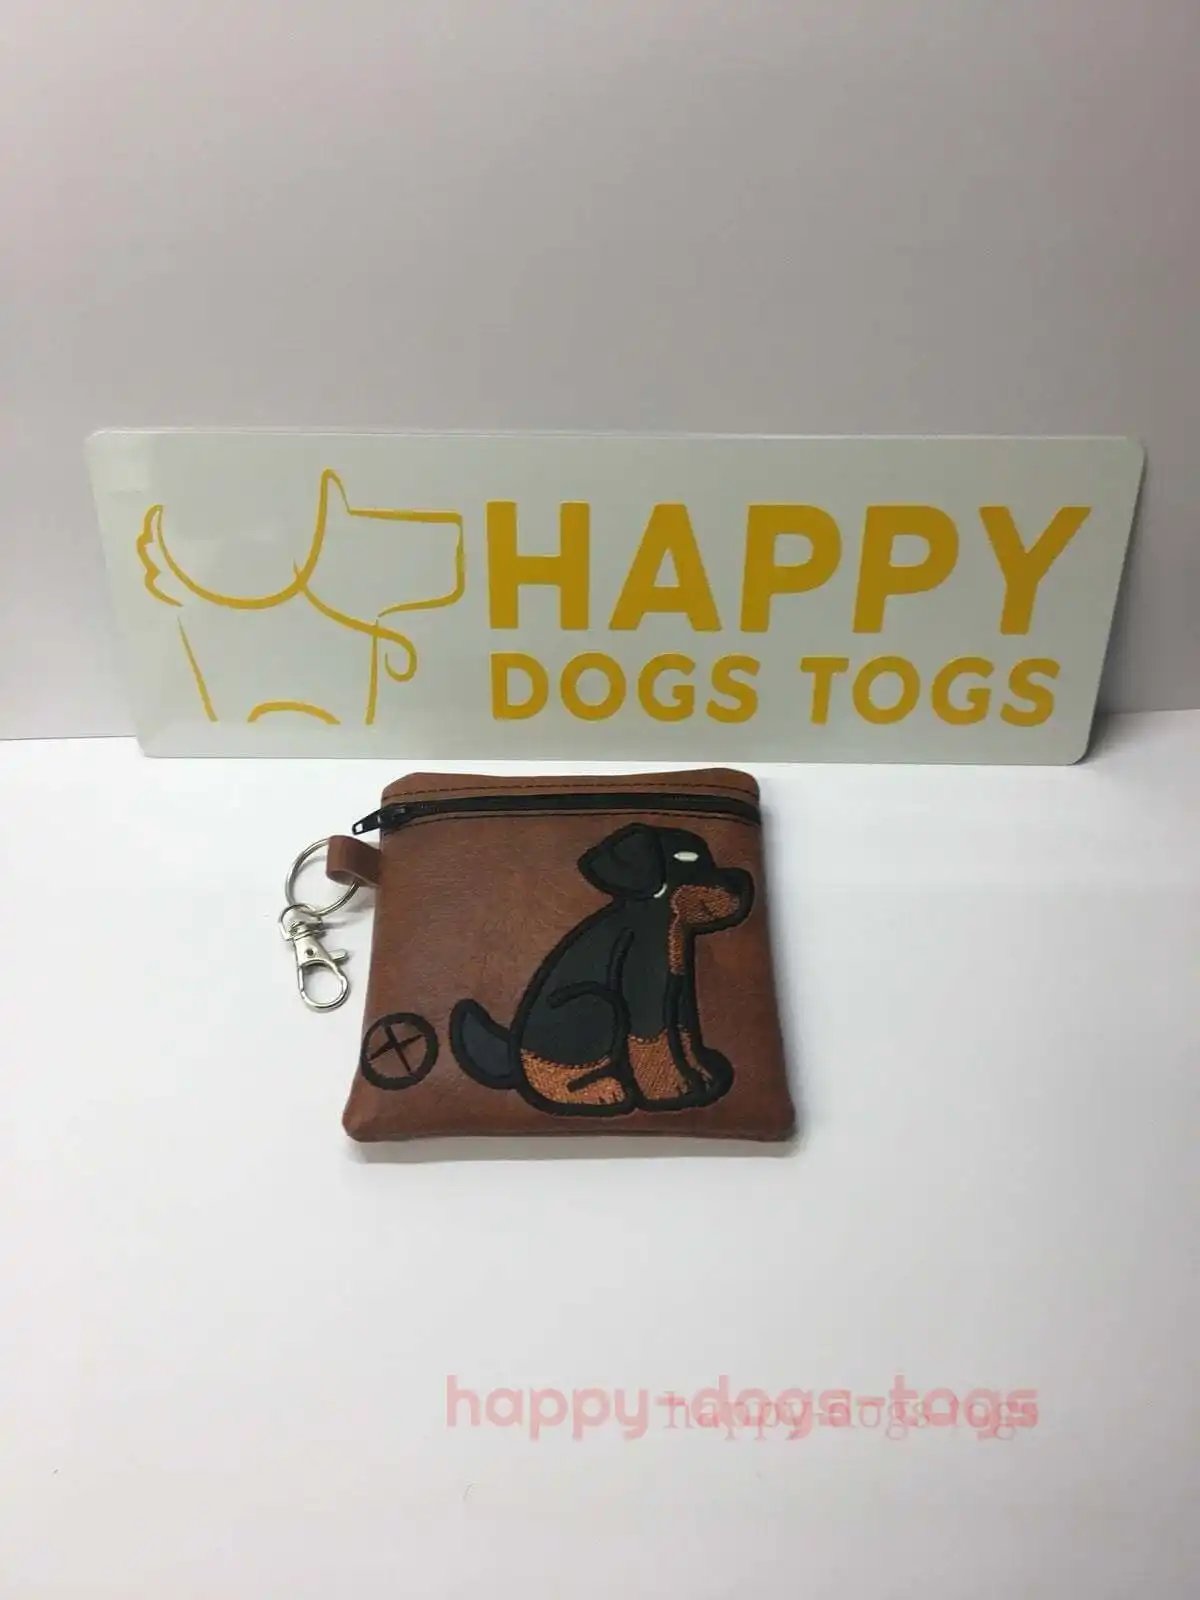 Brown Rottweiler sitting embroidered Dog poo bag dispenser